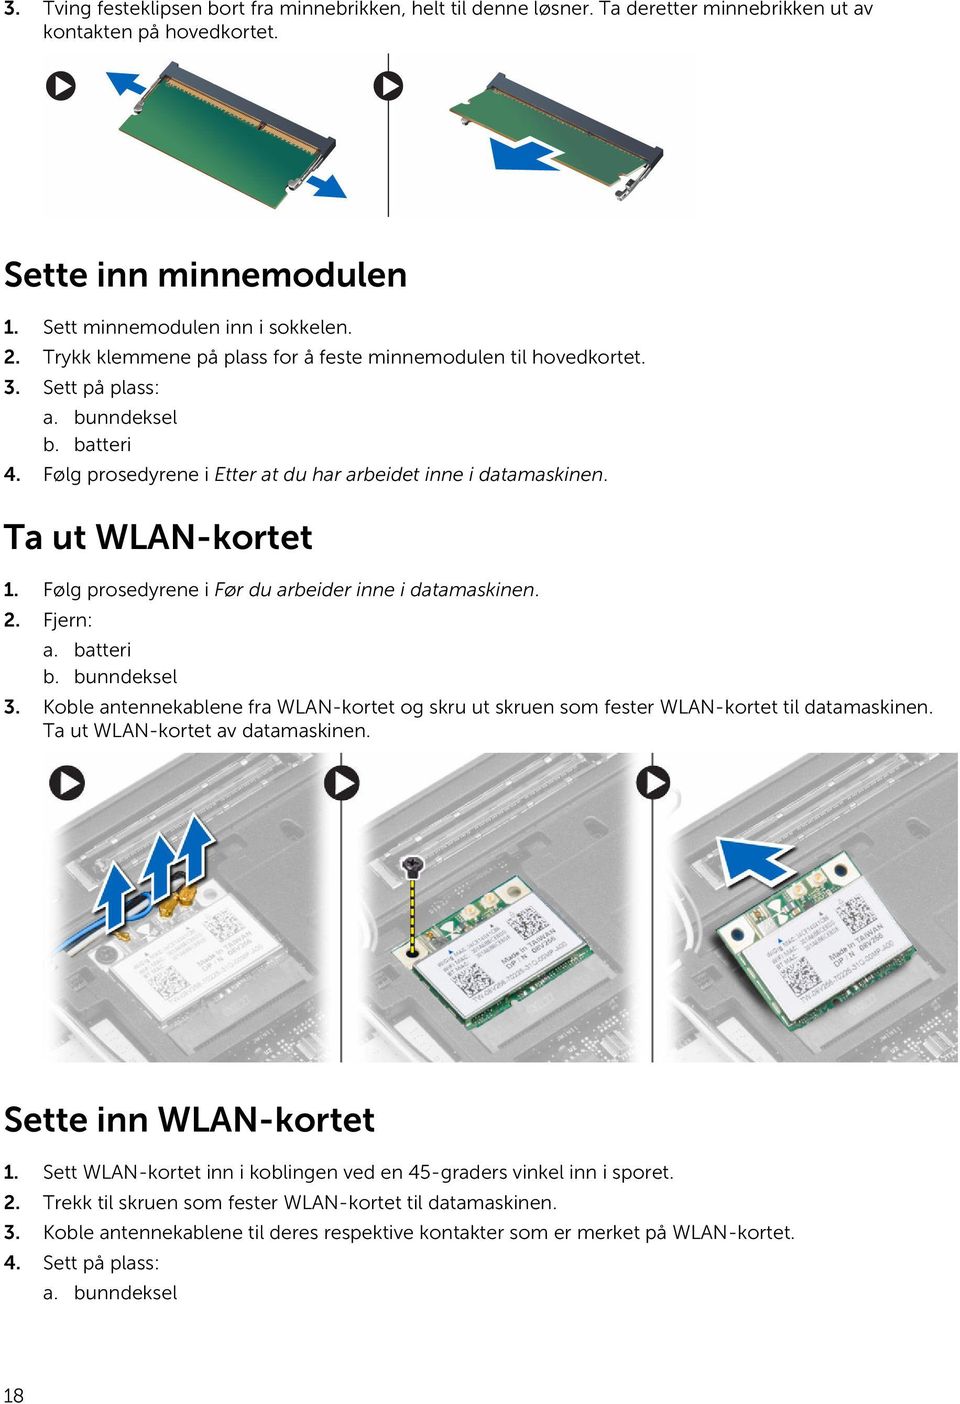 Følg prosedyrene i Før du arbeider inne i datamaskinen. 2. Fjern: a. batteri b. bunndeksel 3. Koble antennekablene fra WLAN-kortet og skru ut skruen som fester WLAN-kortet til datamaskinen.